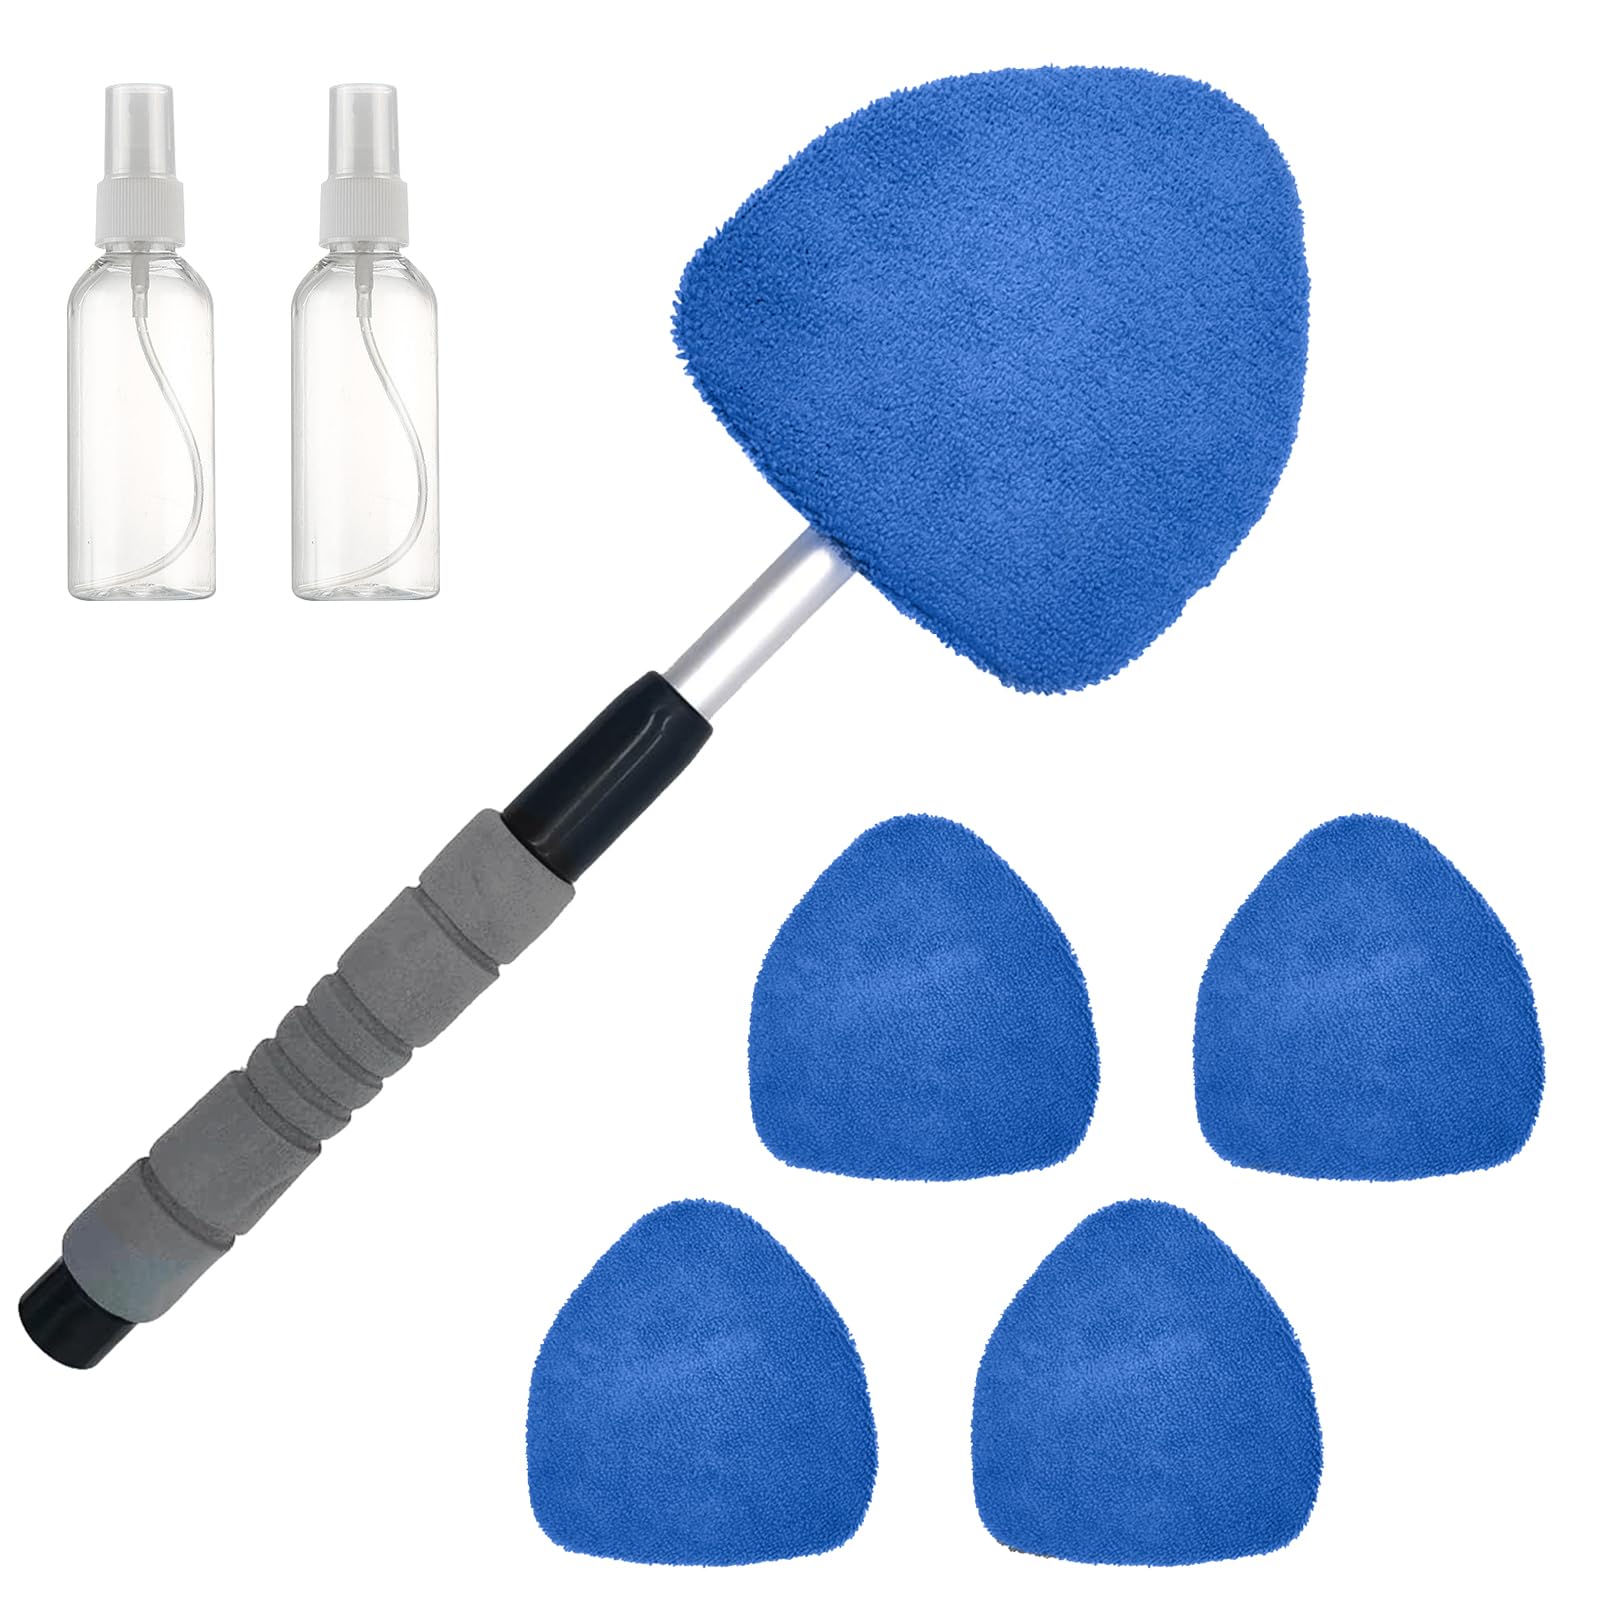 MIGIFTDY Auto Mikrofaser Reiniger Schwenkbar Waschbürste Teleskop Griff und wiederverwendbaren Scheibenreiniger mit 5 Mikrofaserpads und 2 Sprühflaschen Blauer Set (Blau) von MIGIFTDY